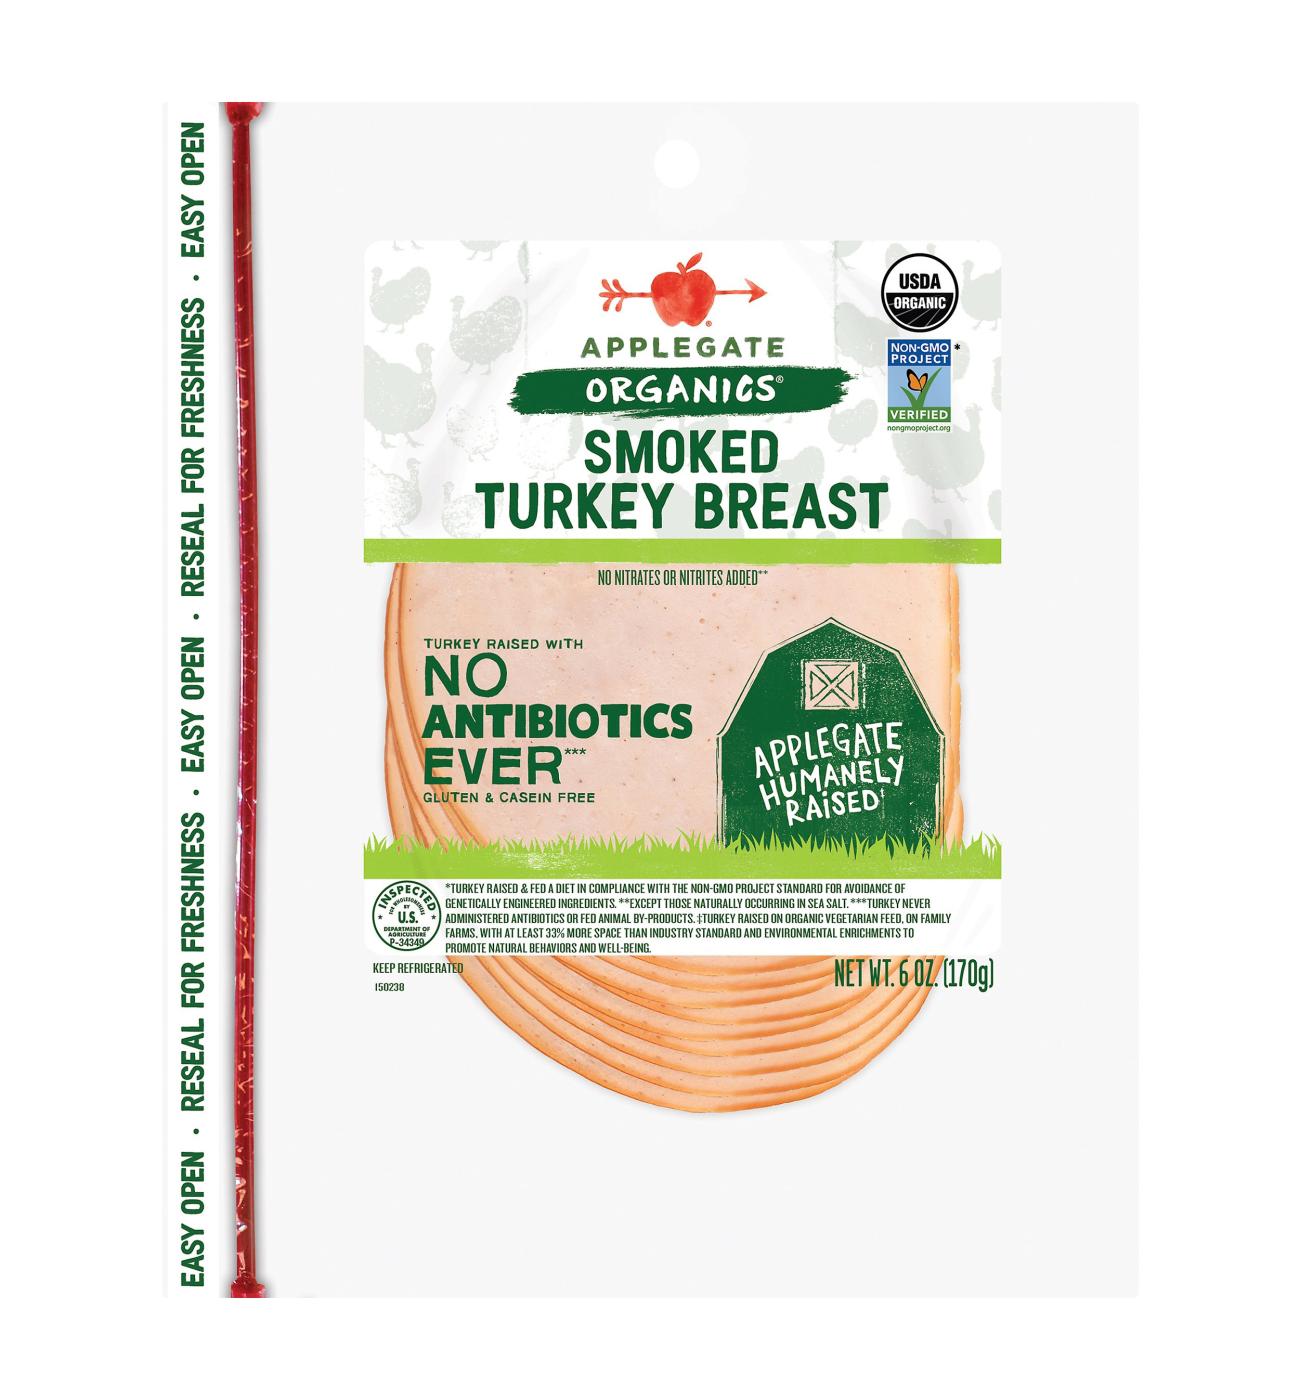 Applegate Organics Smoked Turkey Breast Sliced; image 1 of 2